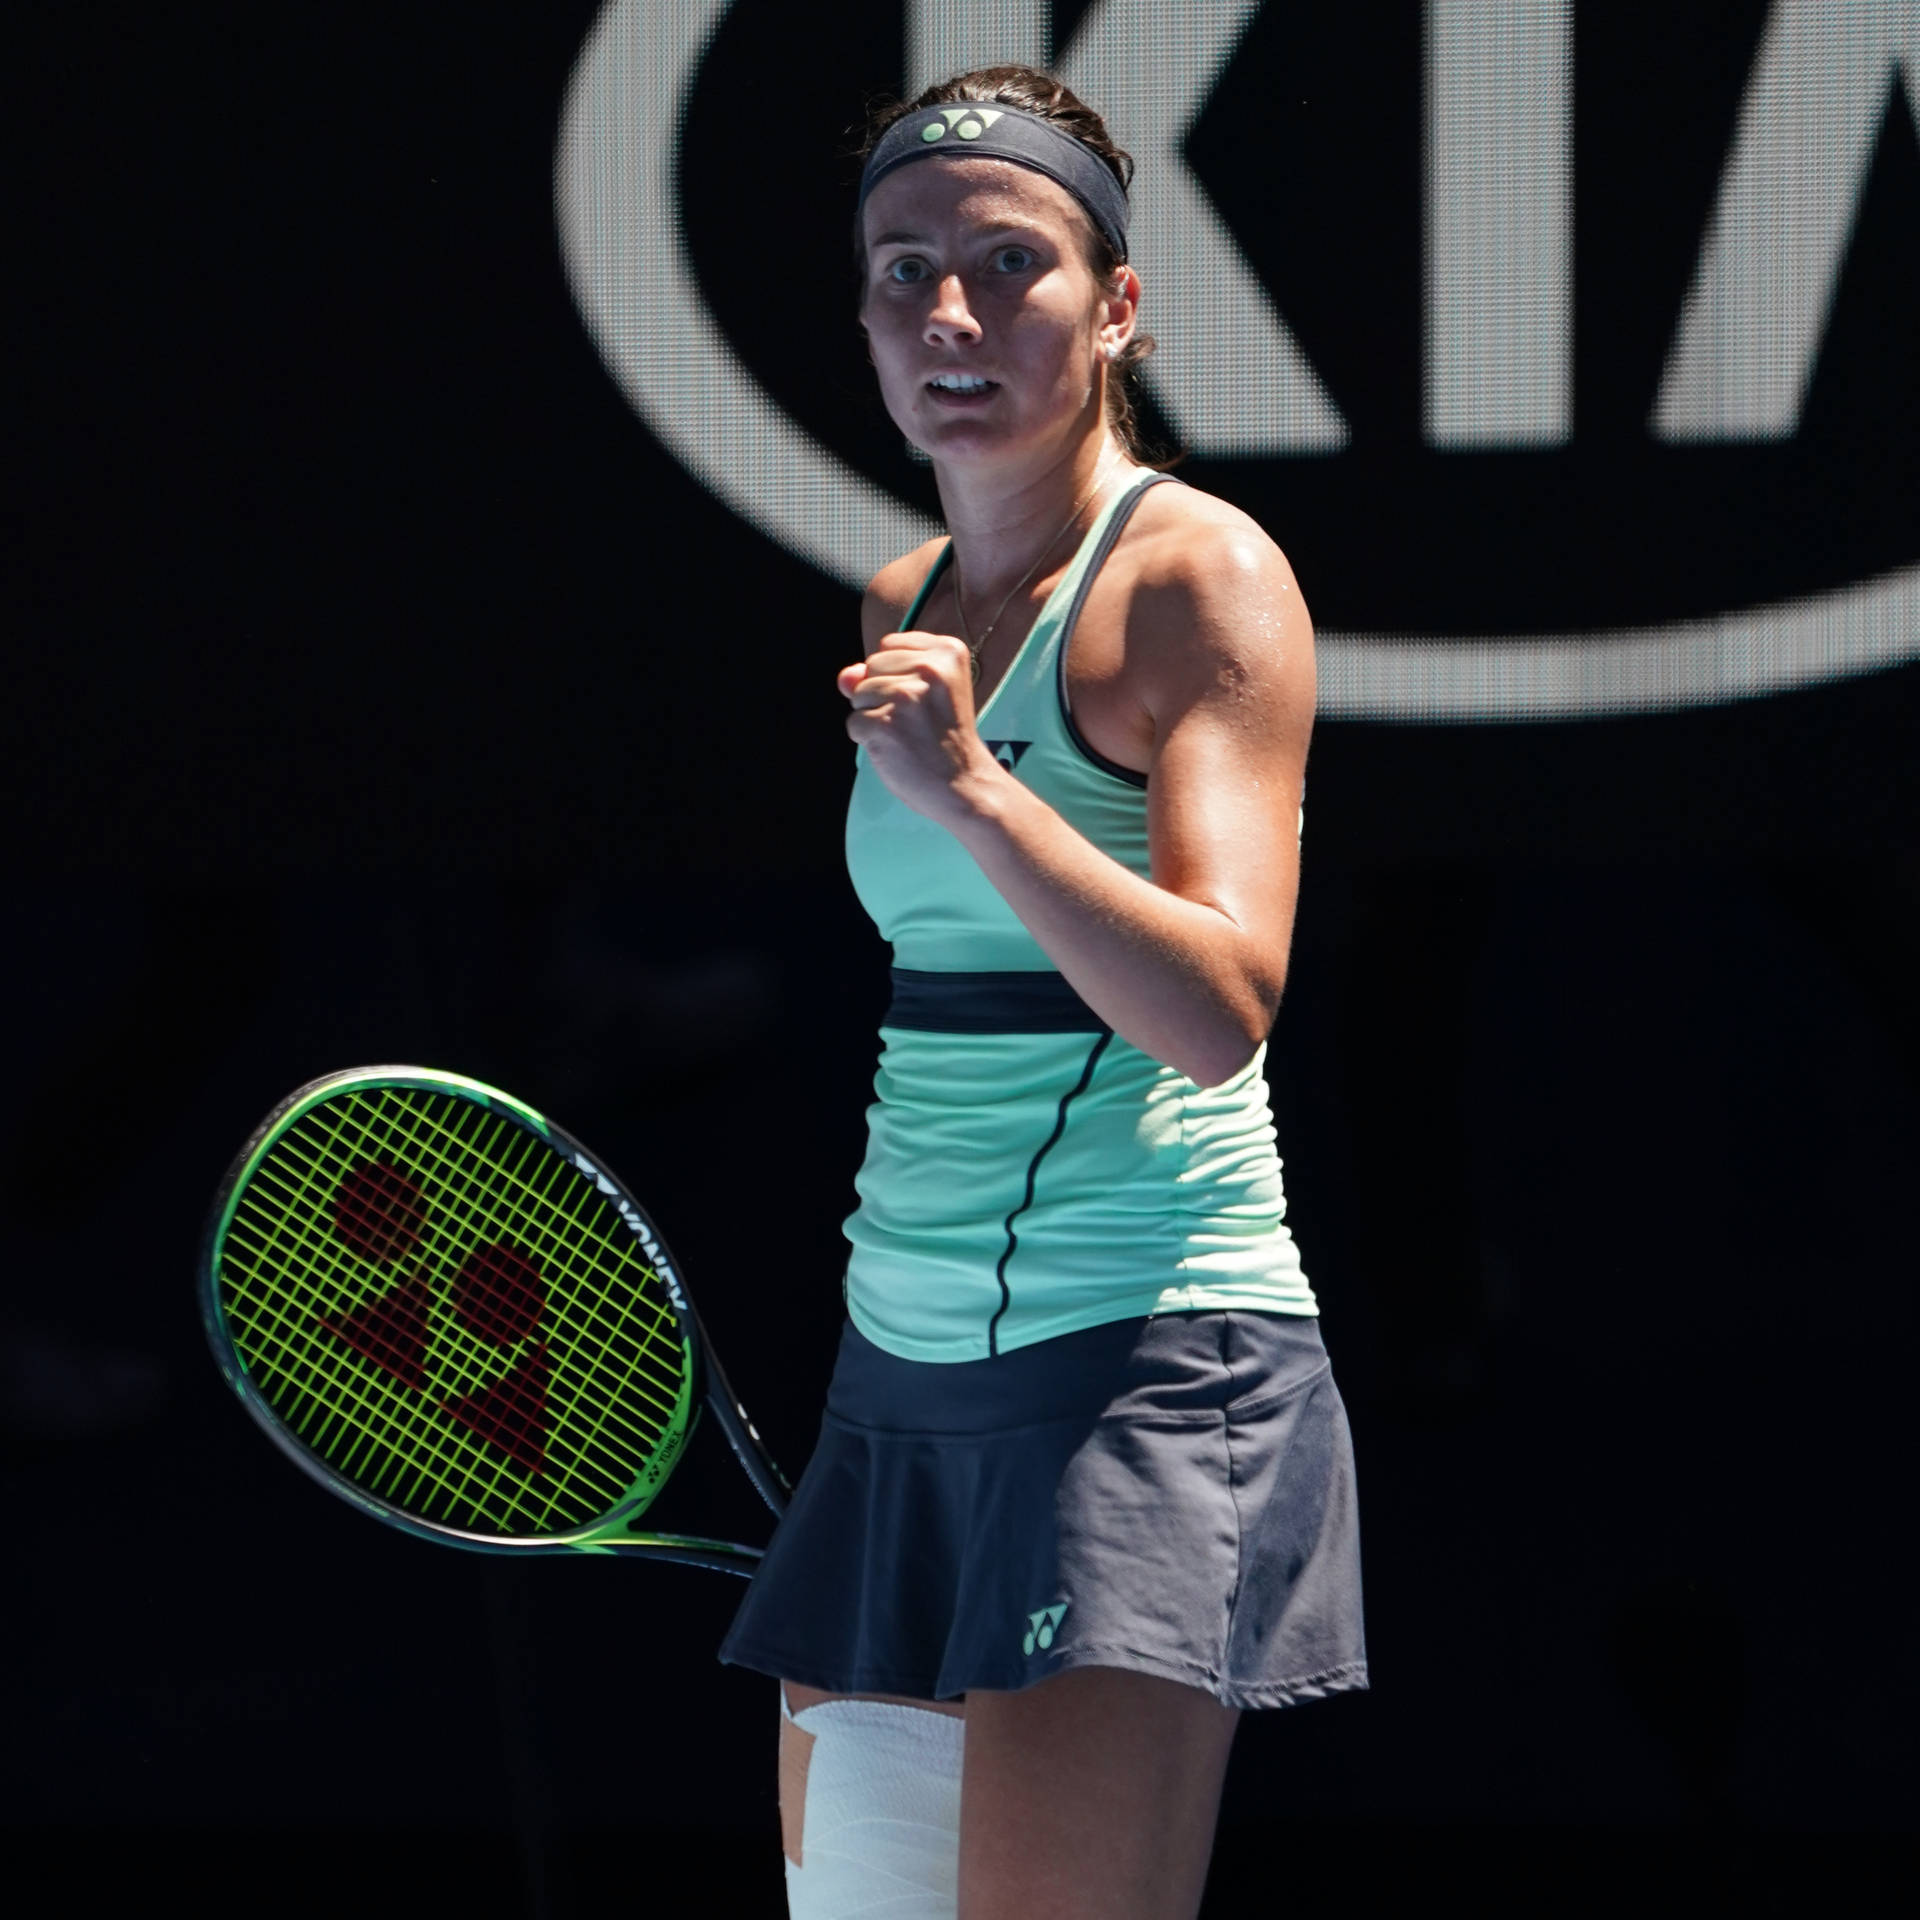 Grand Slam Player Anastasija Sevastova In Action Wallpaper